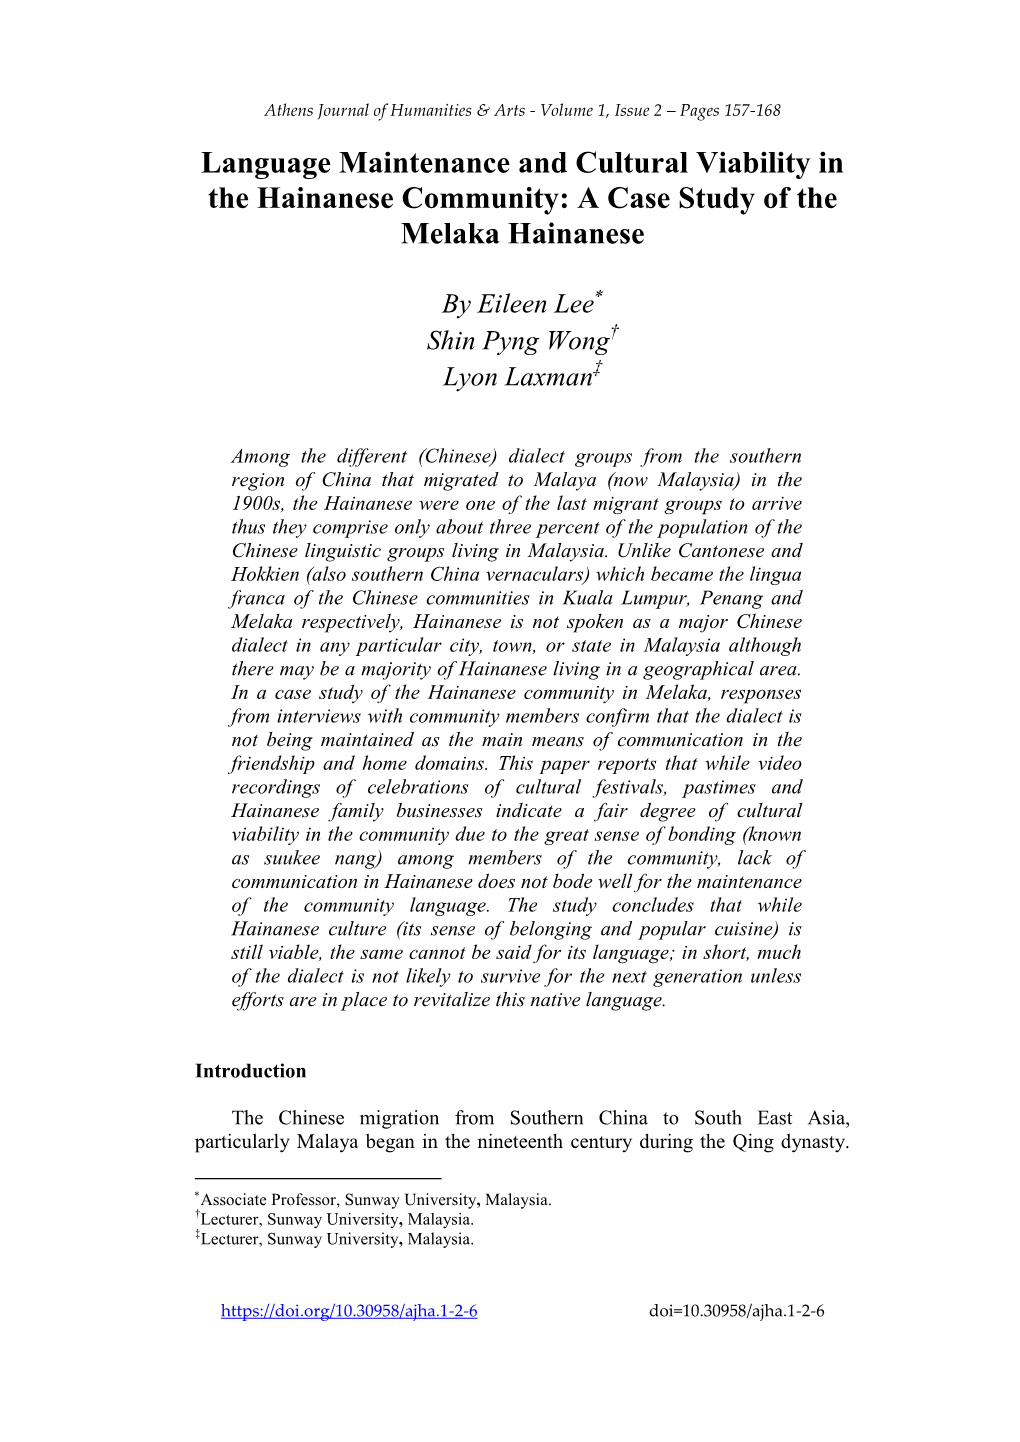 A Case Study of the Melaka Hainanese